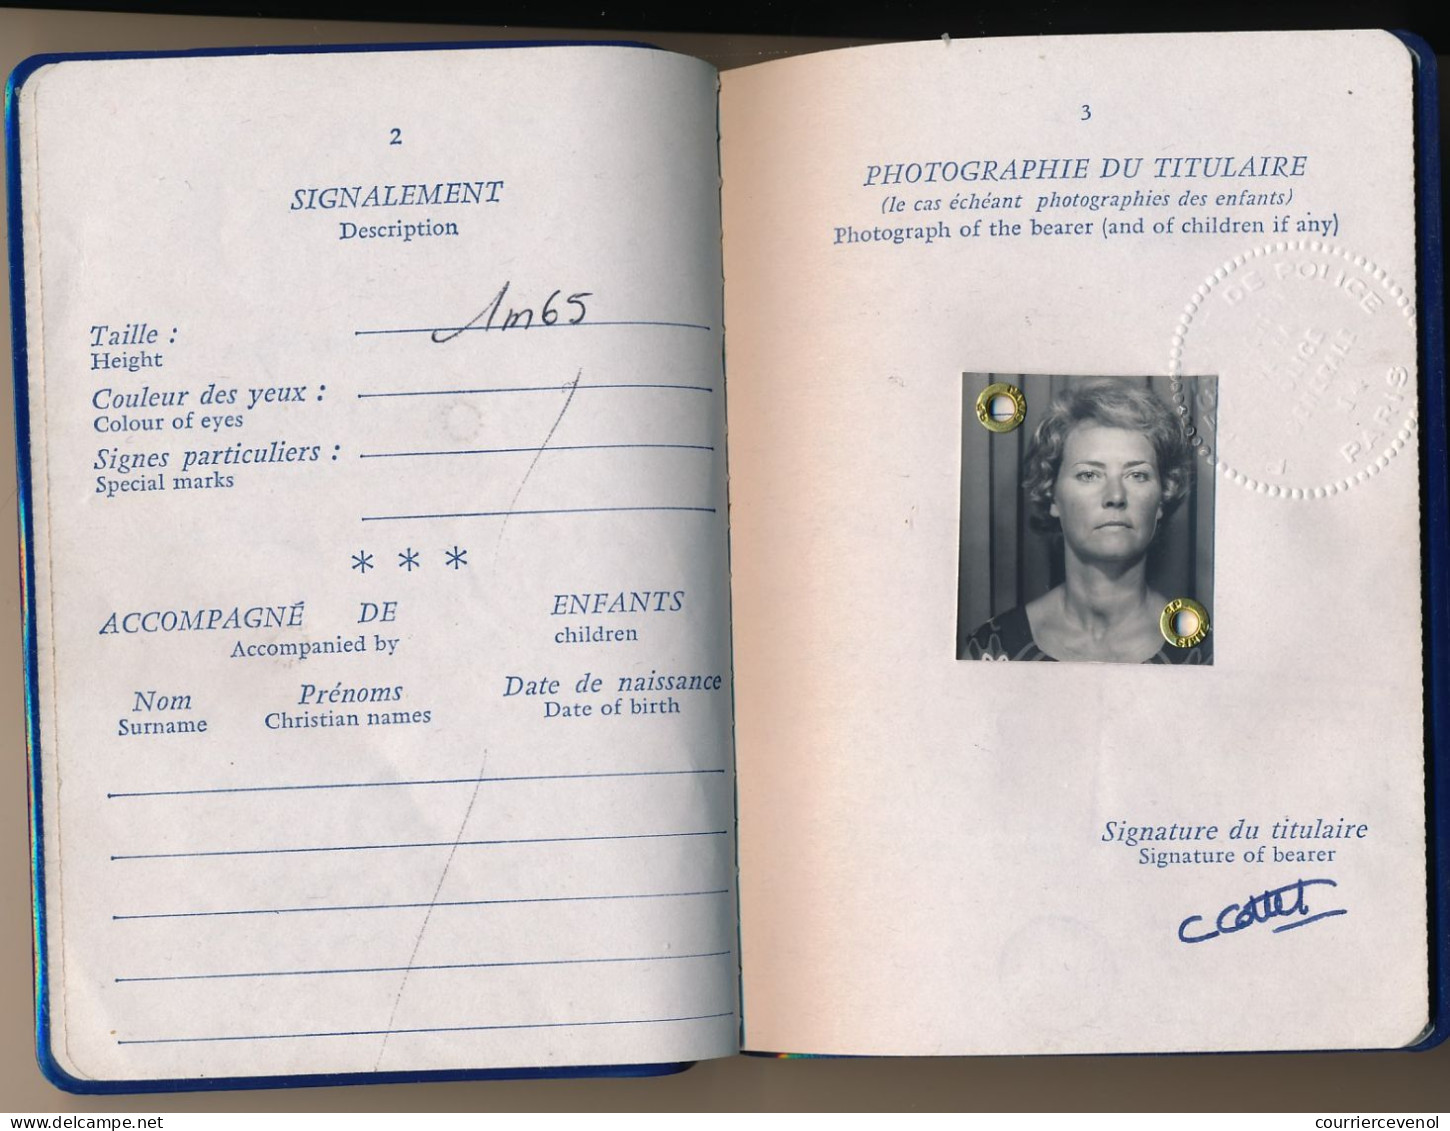 FRANCE / EGYPTE - Passeport émis à Paris 1981 (Fiscal 200,00F) + Fiscaux Egyptiens / Ambassade Egypte à Paris 1984 - Brieven En Documenten